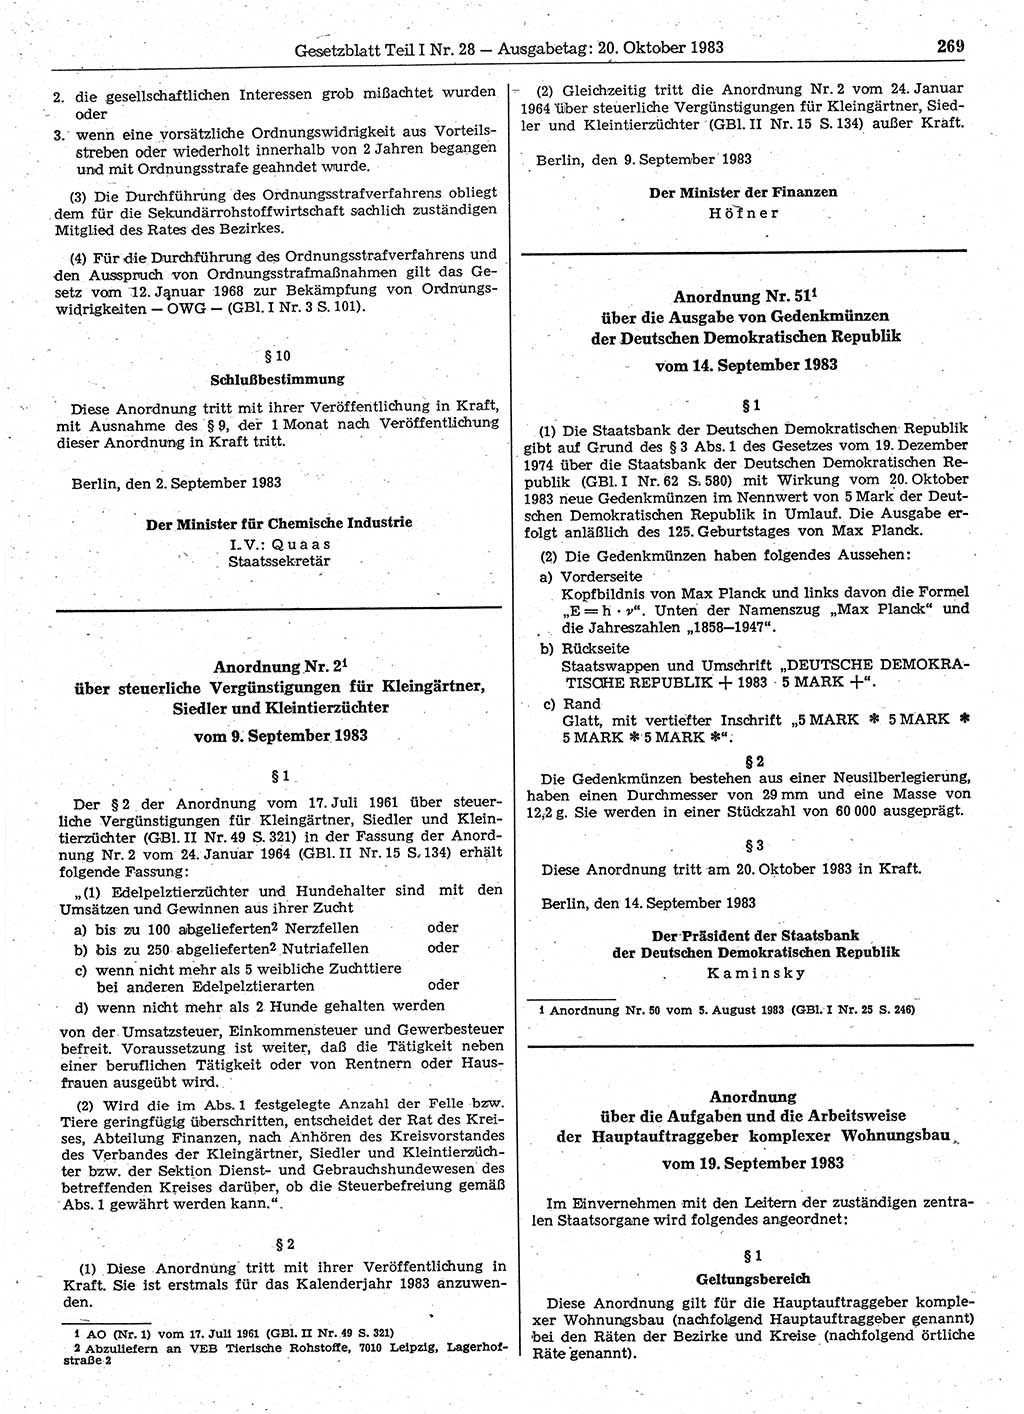 Gesetzblatt (GBl.) der Deutschen Demokratischen Republik (DDR) Teil Ⅰ 1983, Seite 269 (GBl. DDR Ⅰ 1983, S. 269)